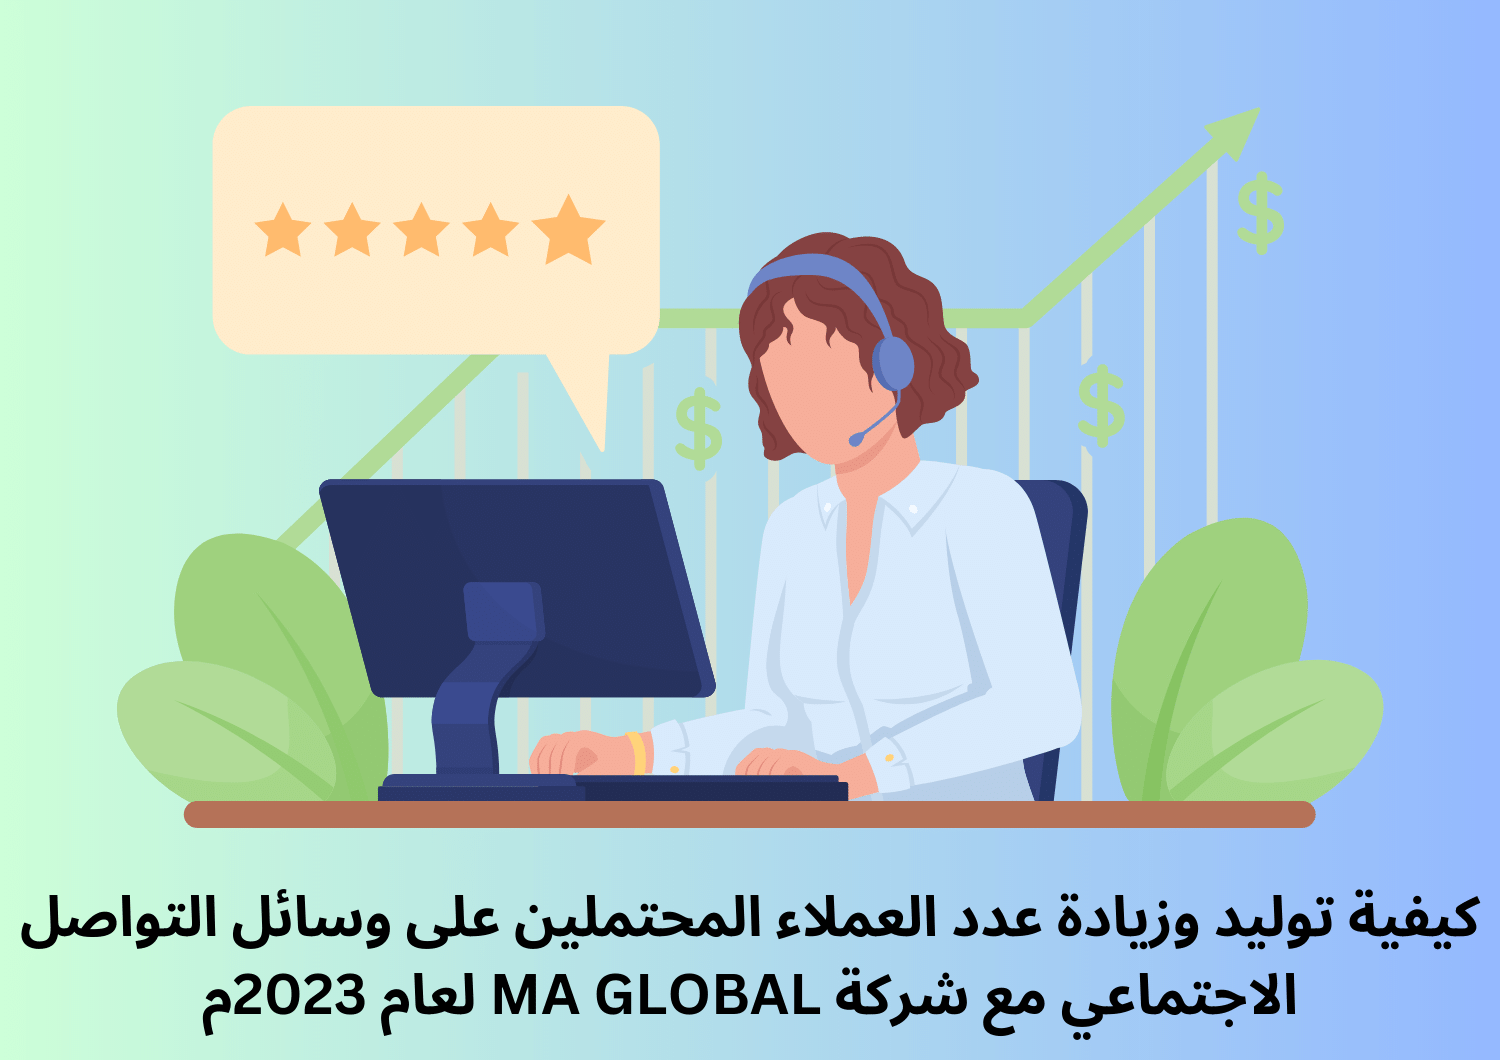 كيفية توليد وزيادة عدد العملاء المحتملين على وسائل التواصل الاجتماعي مع شركة MA GLOBAL لعام 2023م